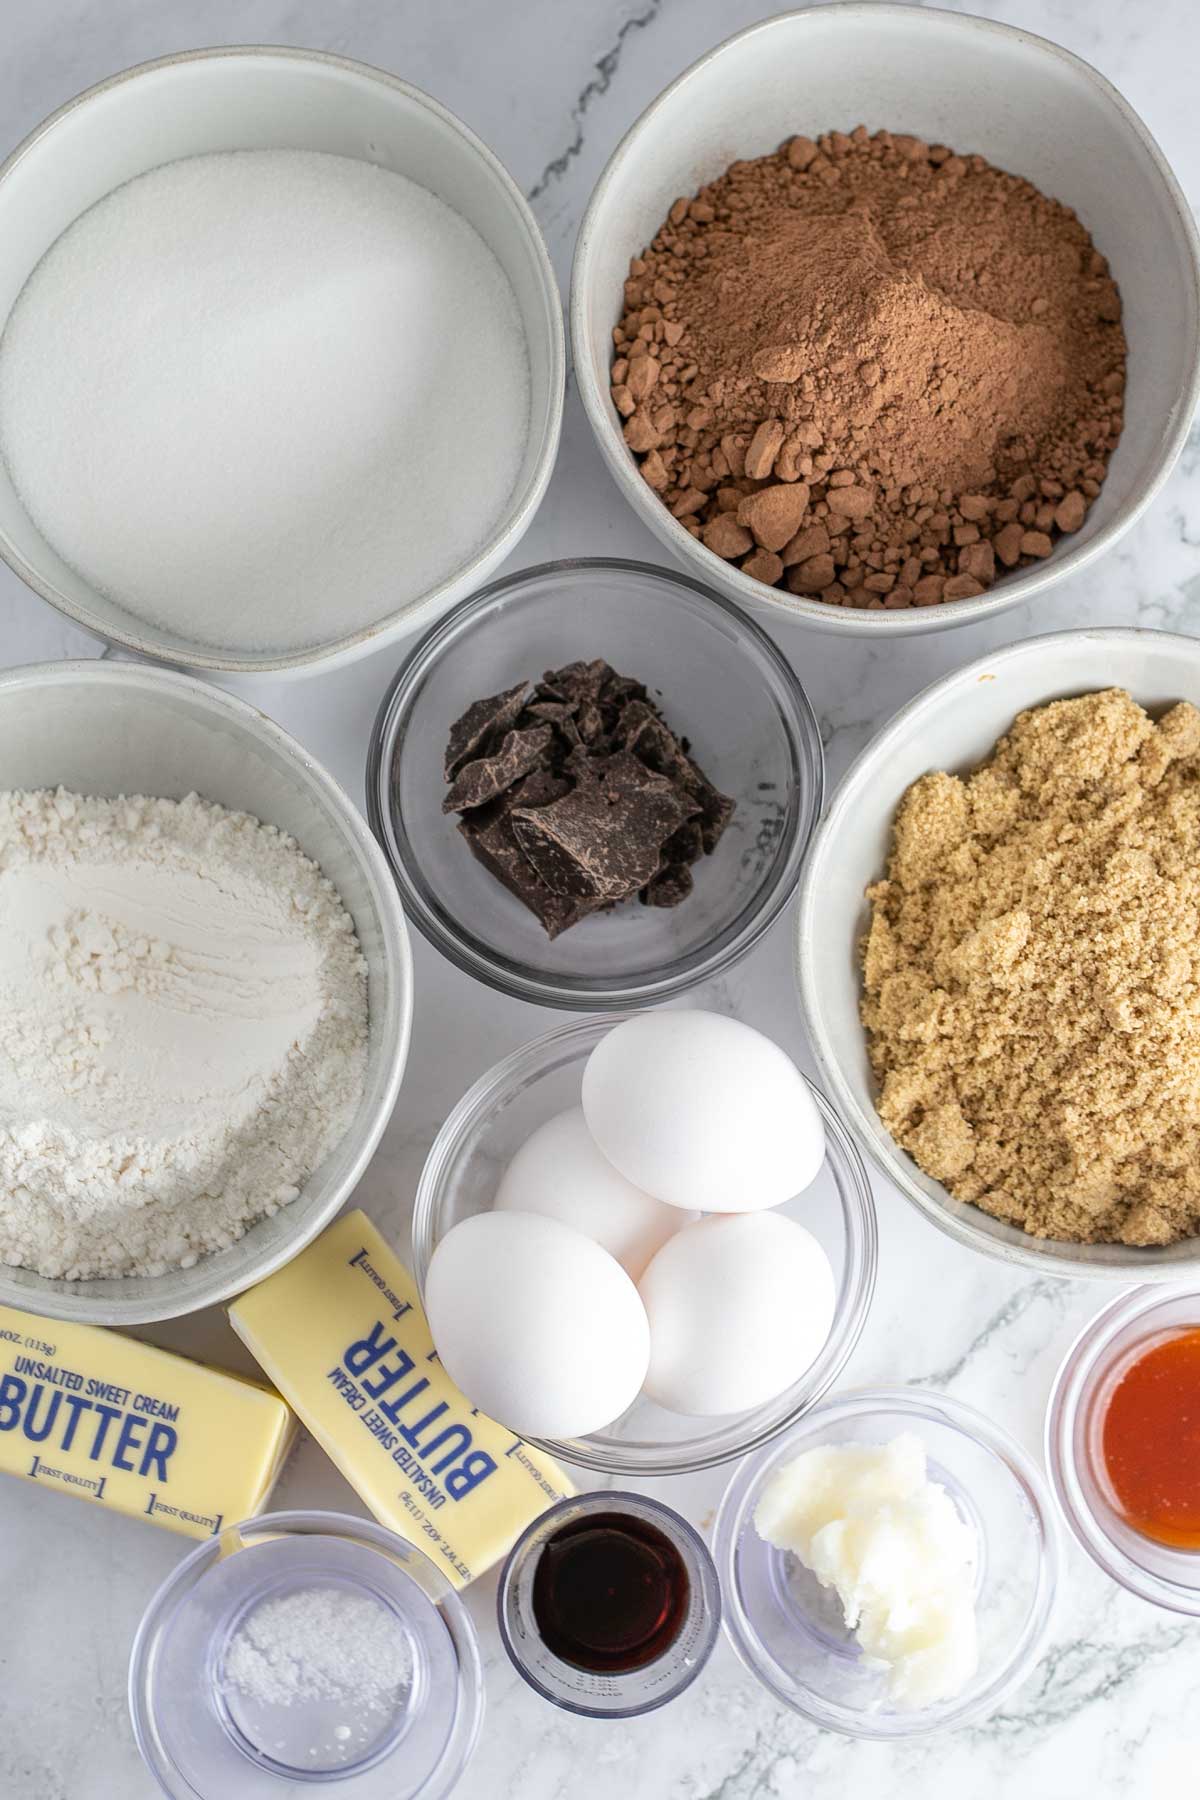 Tall image showing fudge brownie ingredients.